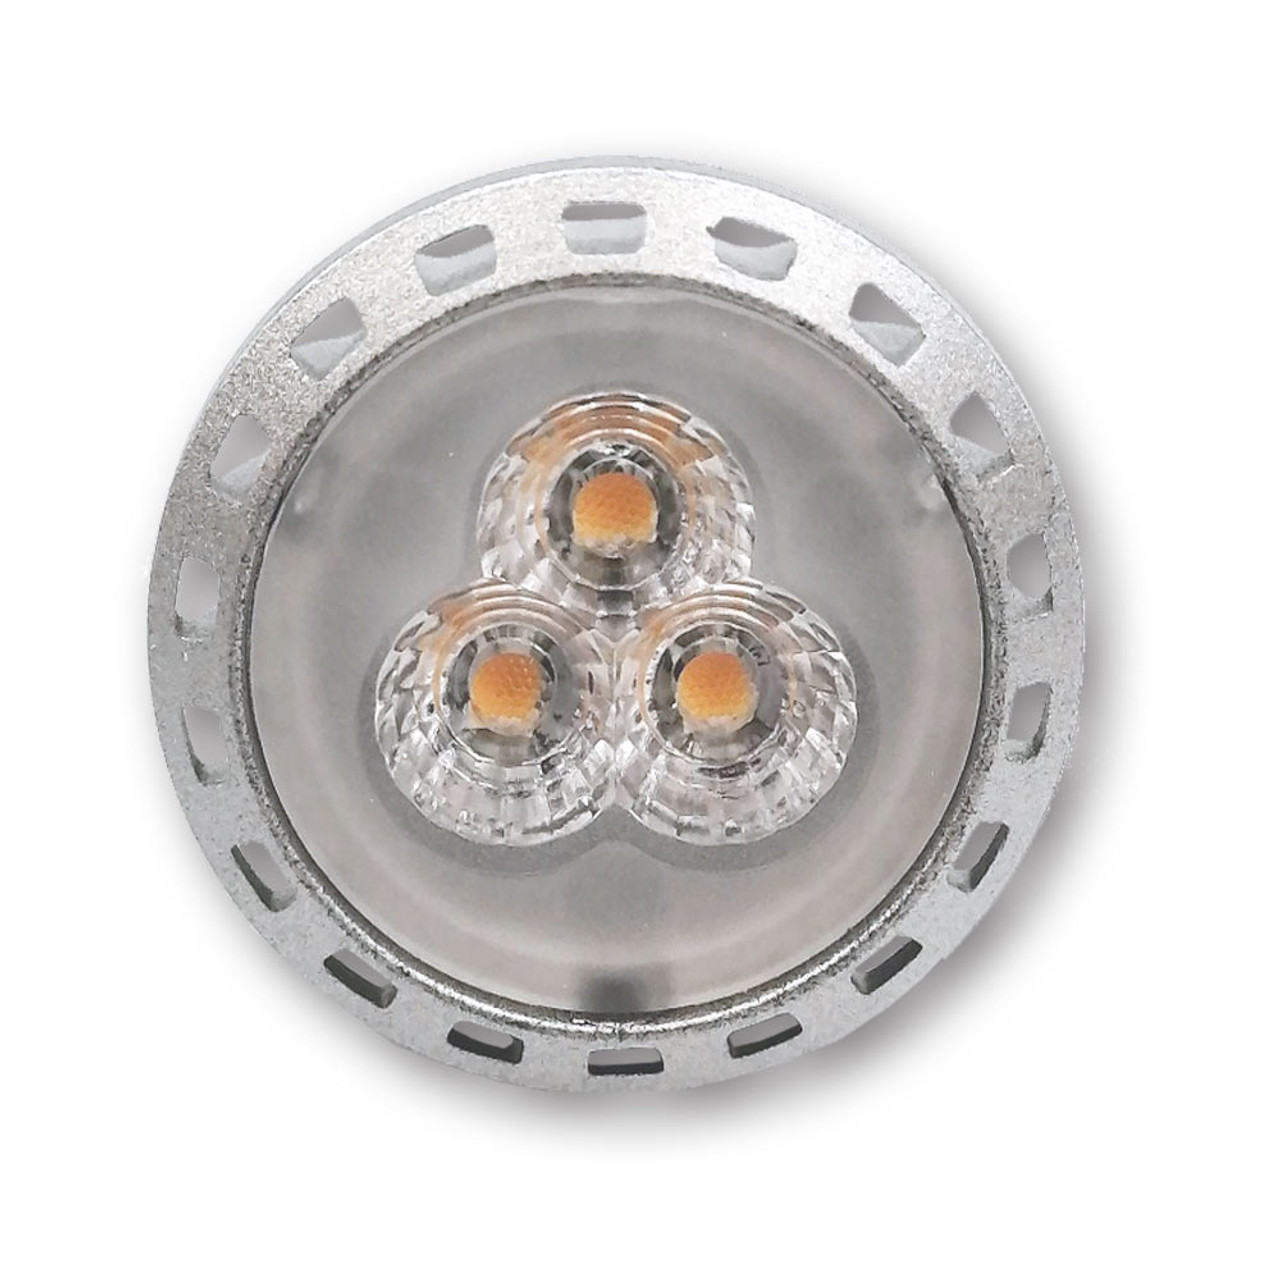 Mega LED - LED Replacement Bulb - MR11 Type, 2.5 Watt, 250 Lumens, 10-30V DC, Beam Angle 30º, 3000K (30031-DC) - Apollo Lighting